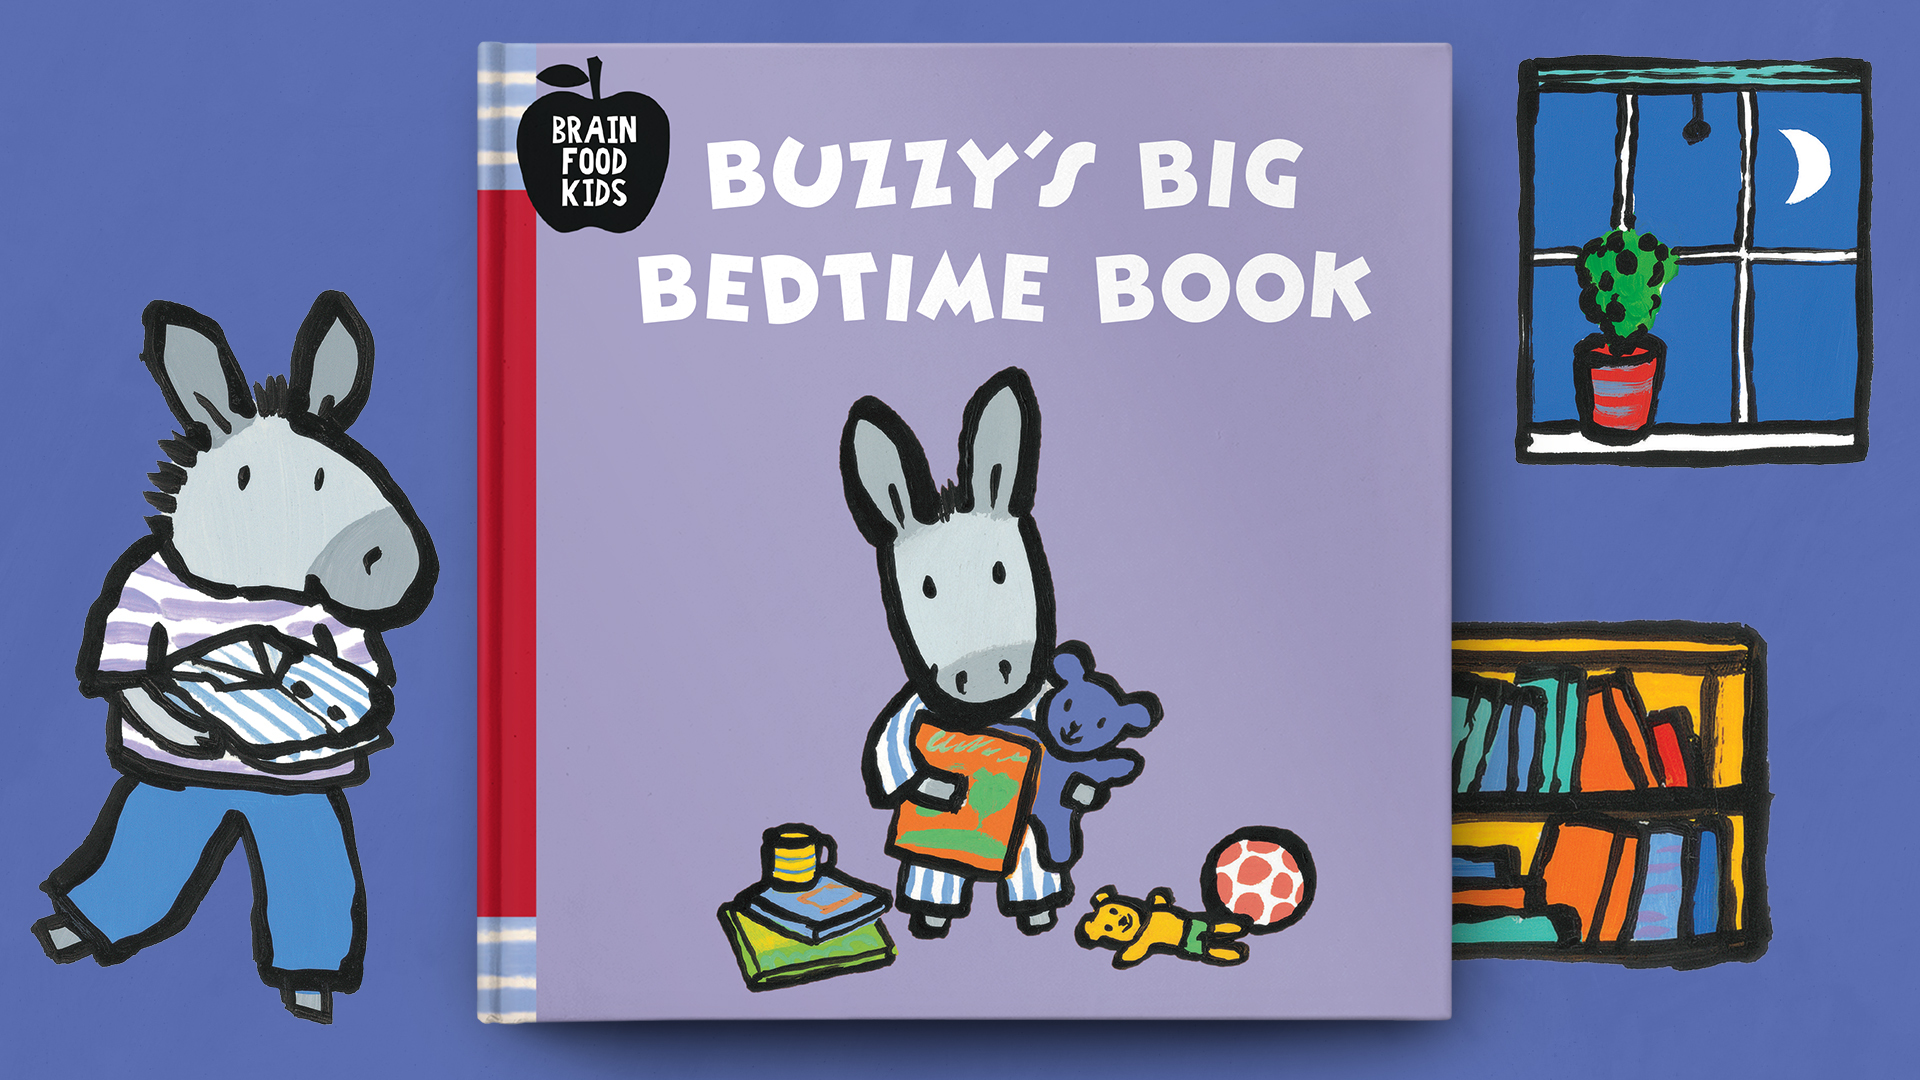 Buzzy's Big Bedtime Book